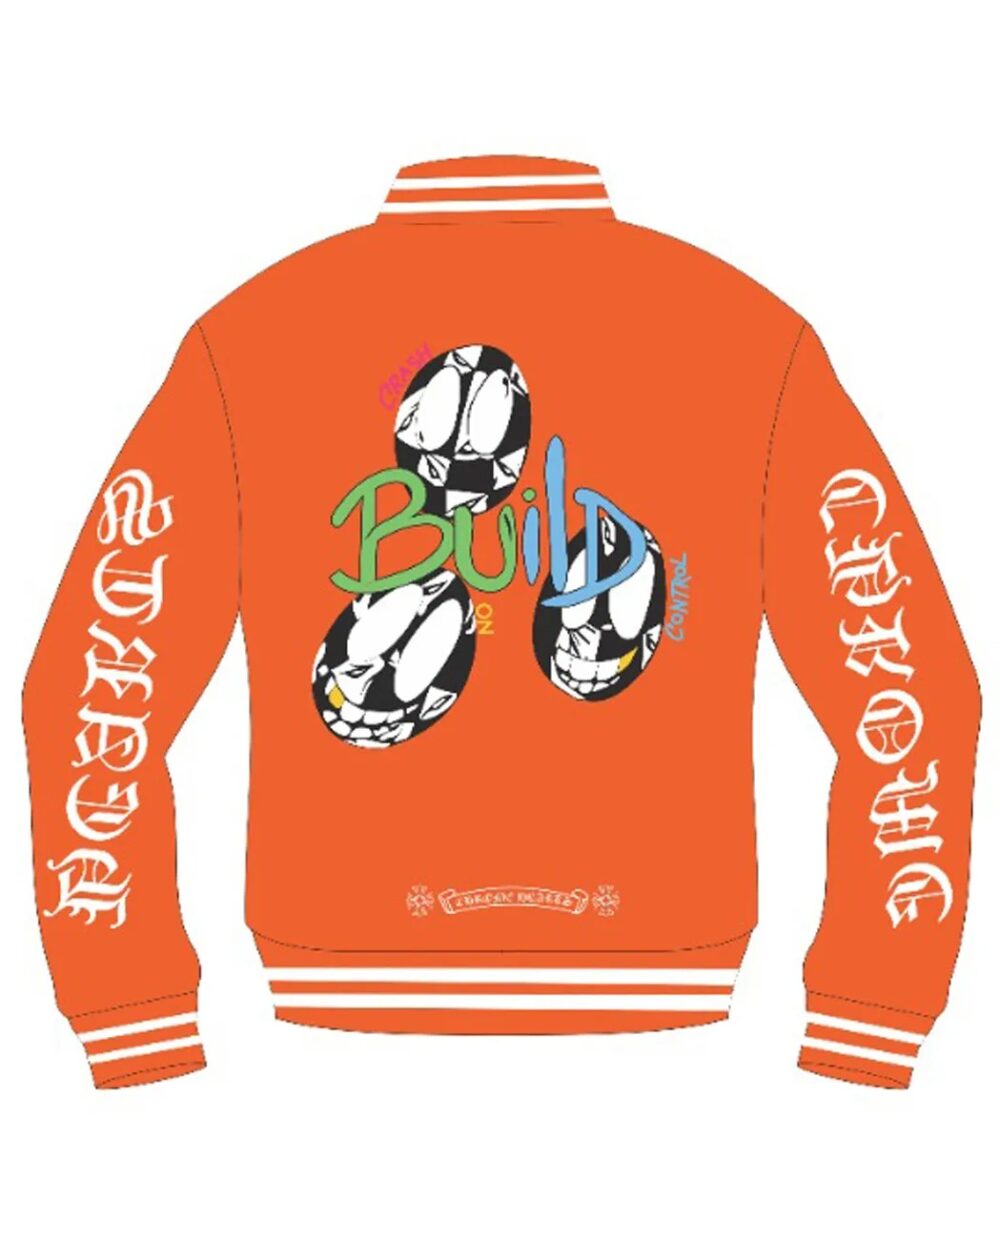 Vibrant Orange Chrome Hearts Matty Boy Link & Build Jacket with a unique design."